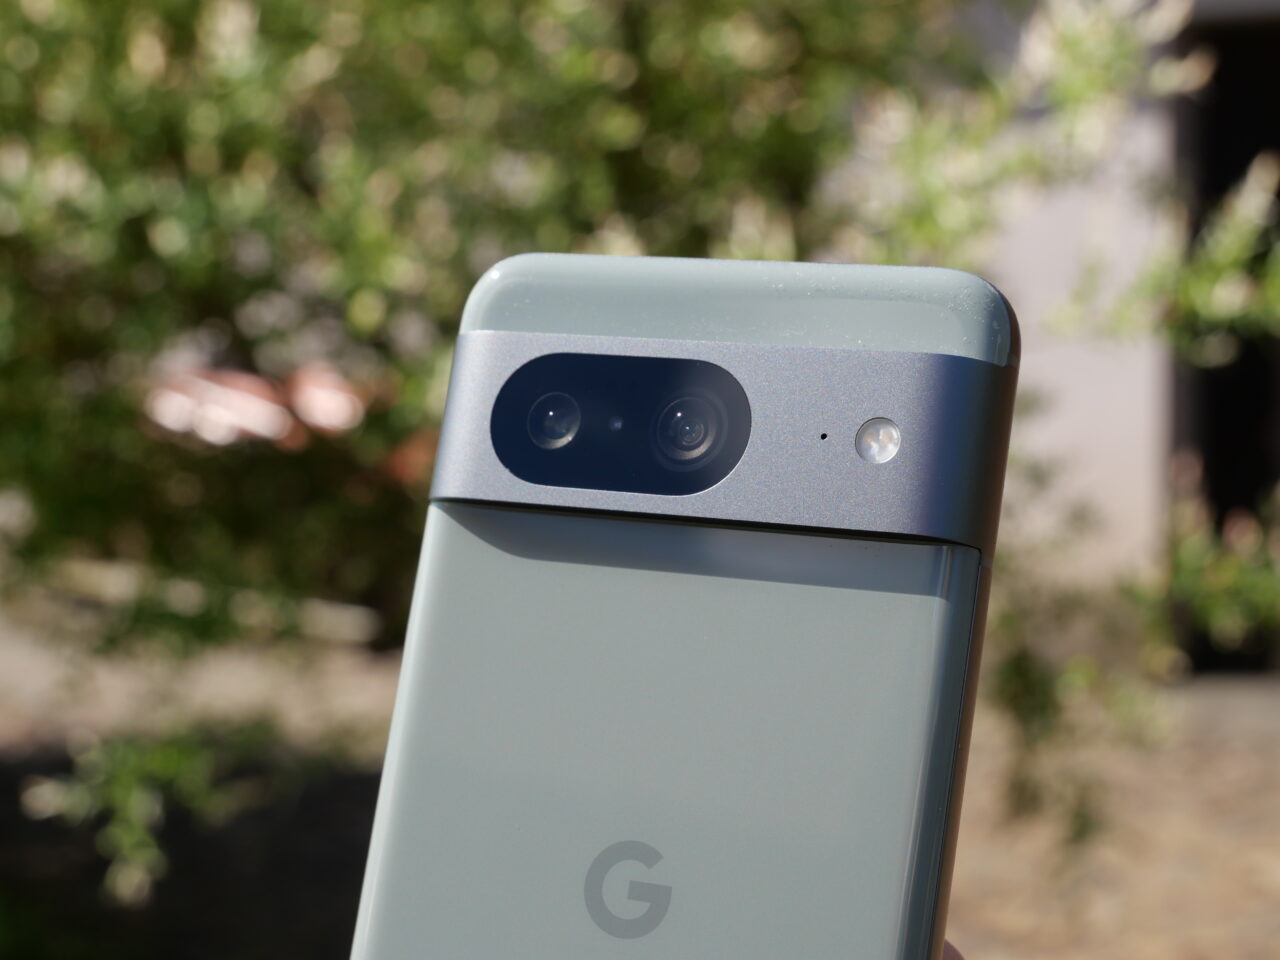 Smartfon Google z podwójnym aparatem i logo na tylnej obudowie, trzymany na tle roślinności.